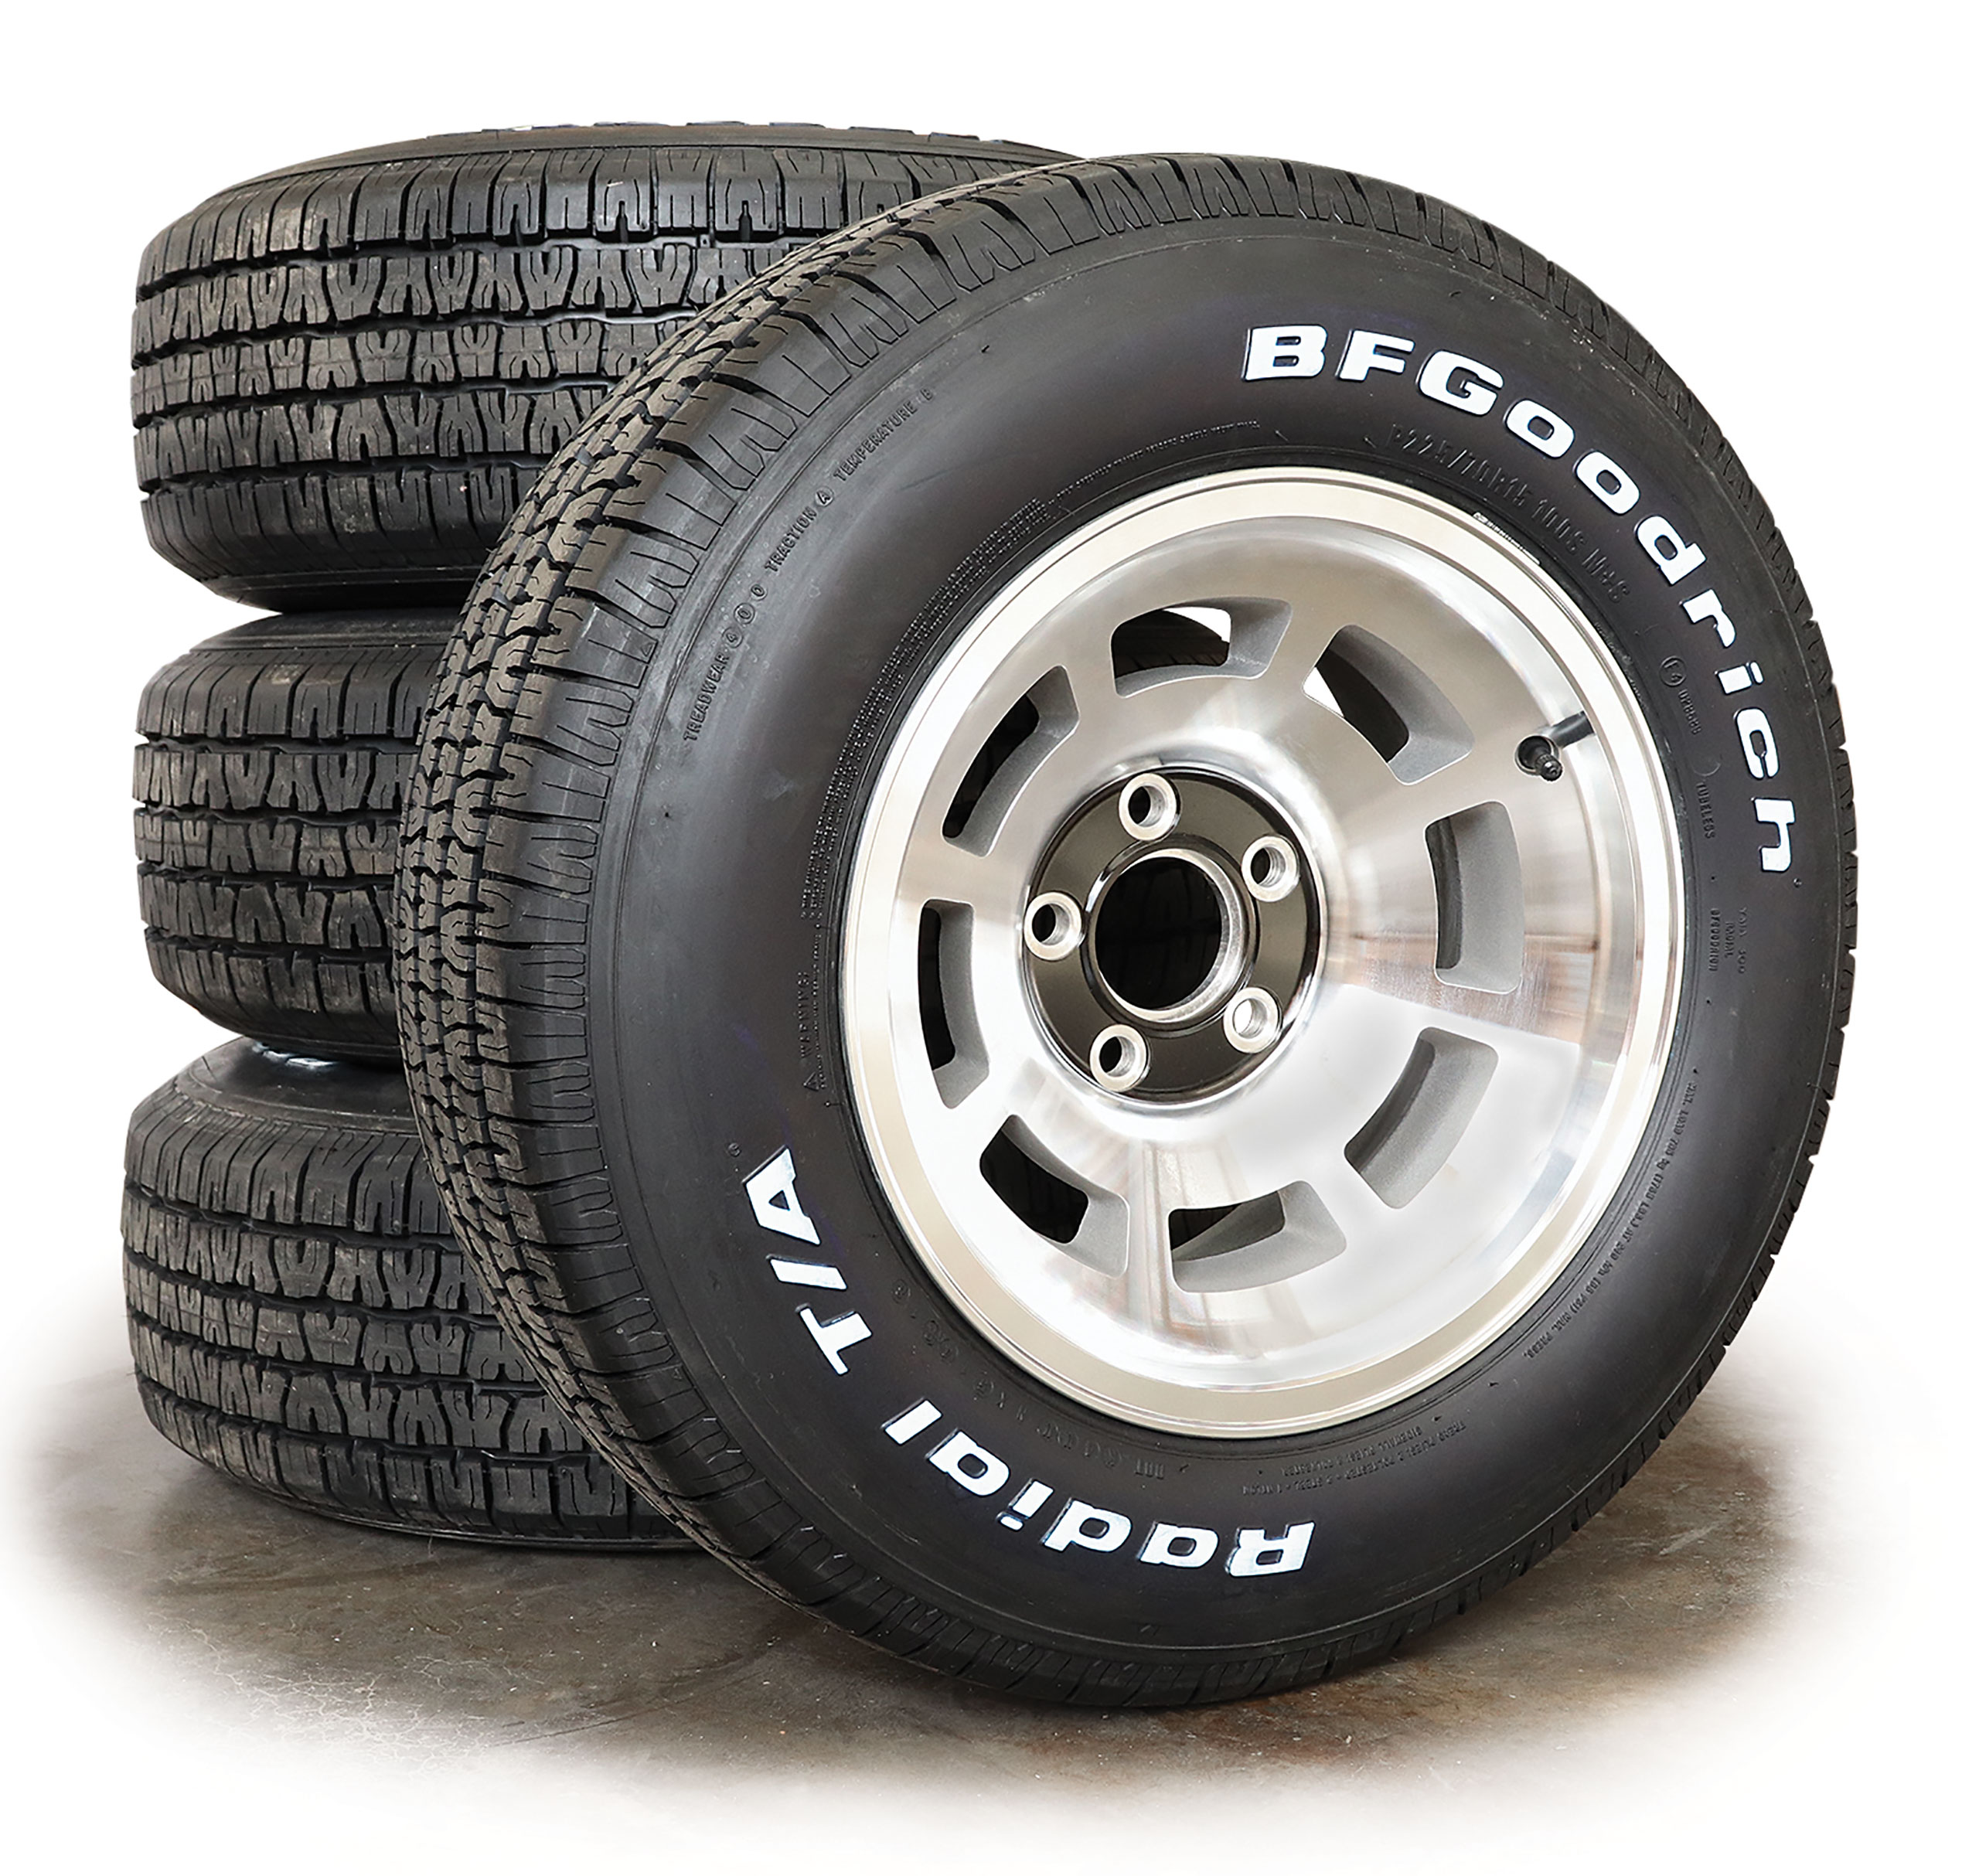 22774 Polished Aluminum Wheel w/ Black Center & 225/70R15 BF Goodrich Tire Kit For 76-79 Corvette